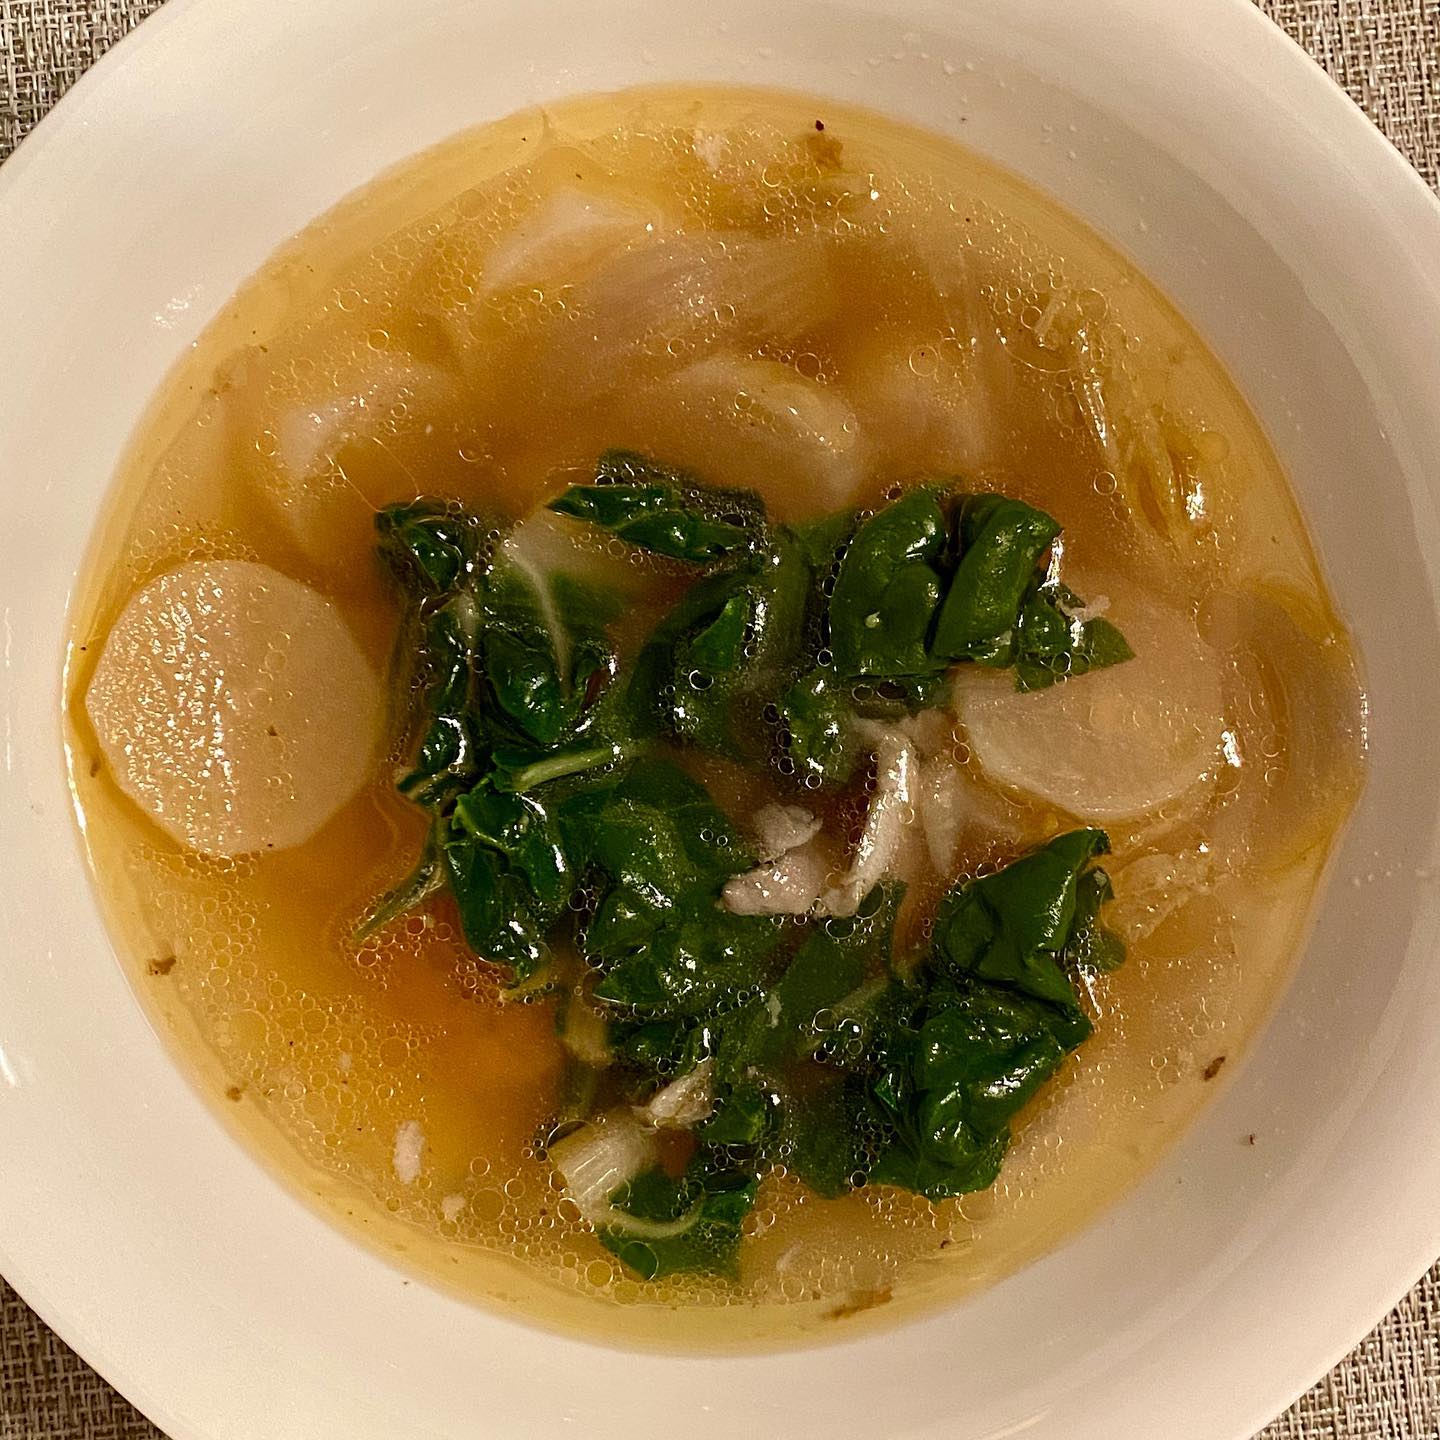 Daikon radish kale soup